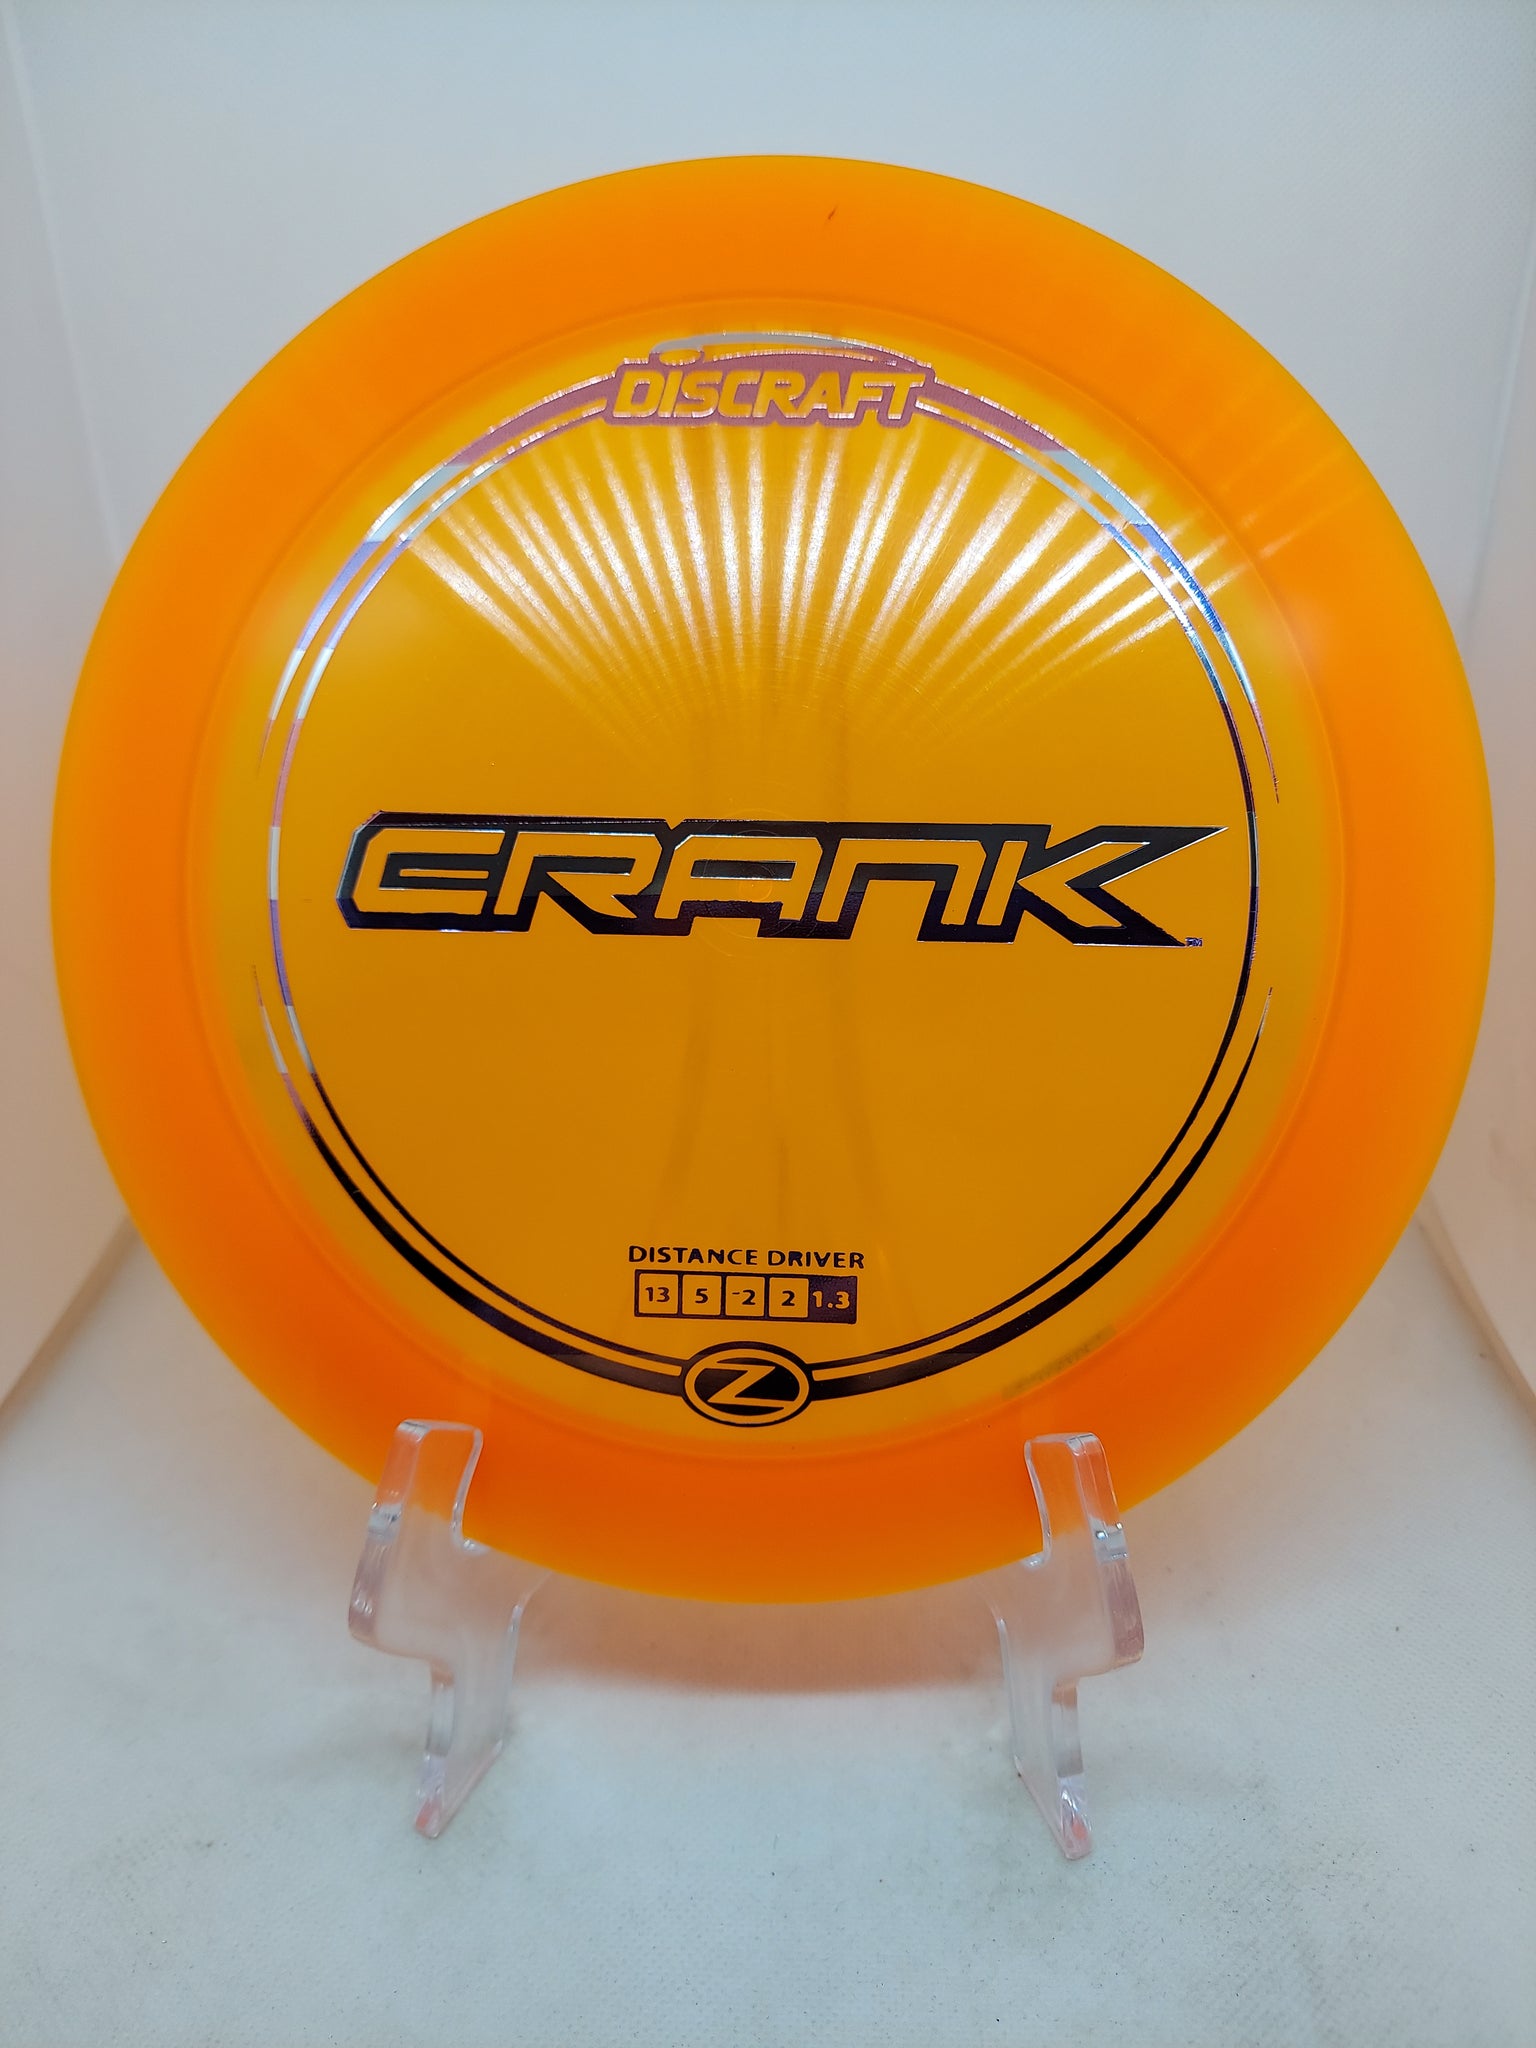 Crank ( Z )